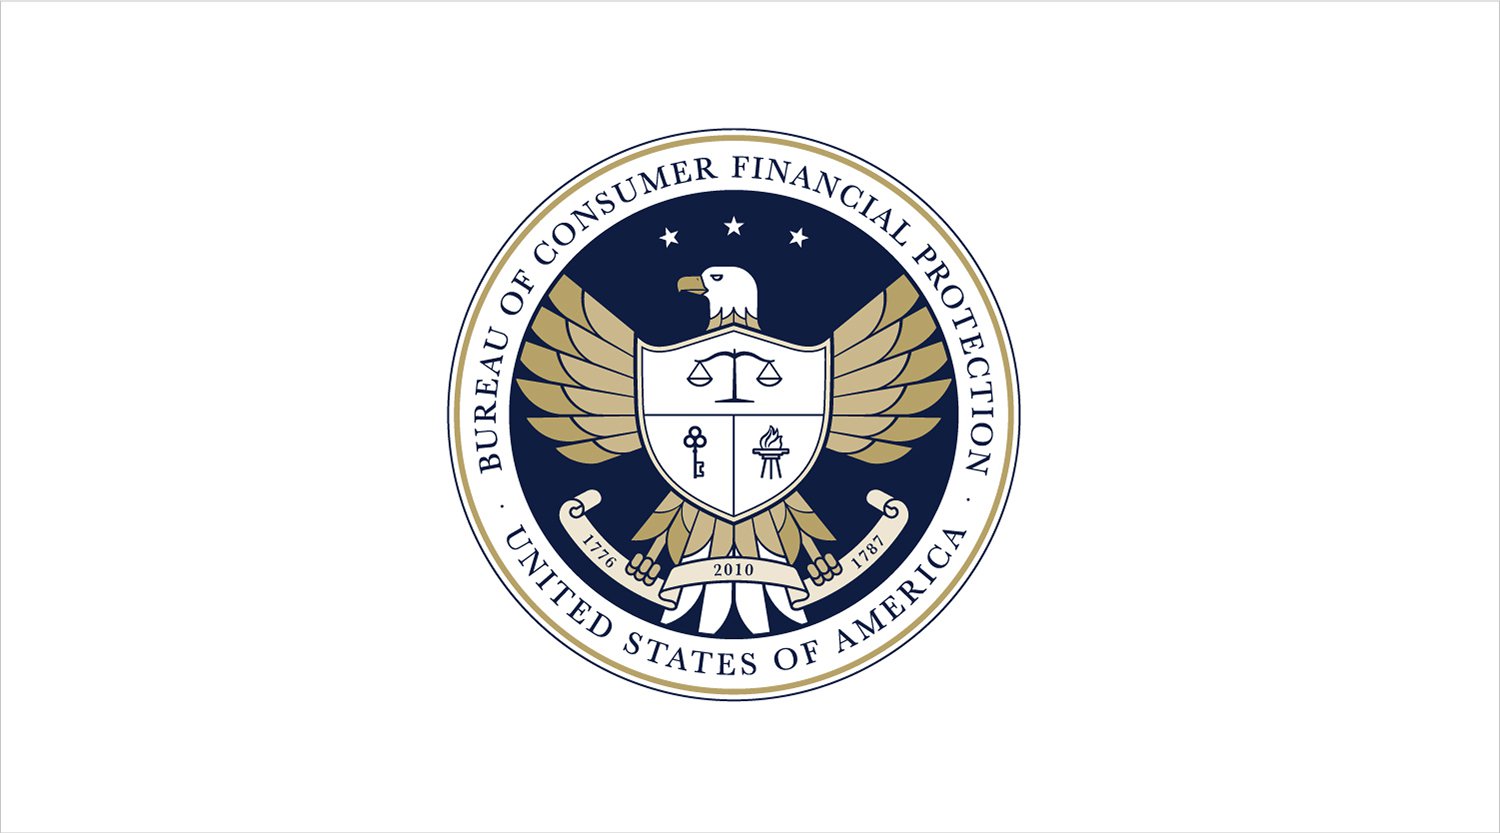 Consumer Financial Protection Bureau seal